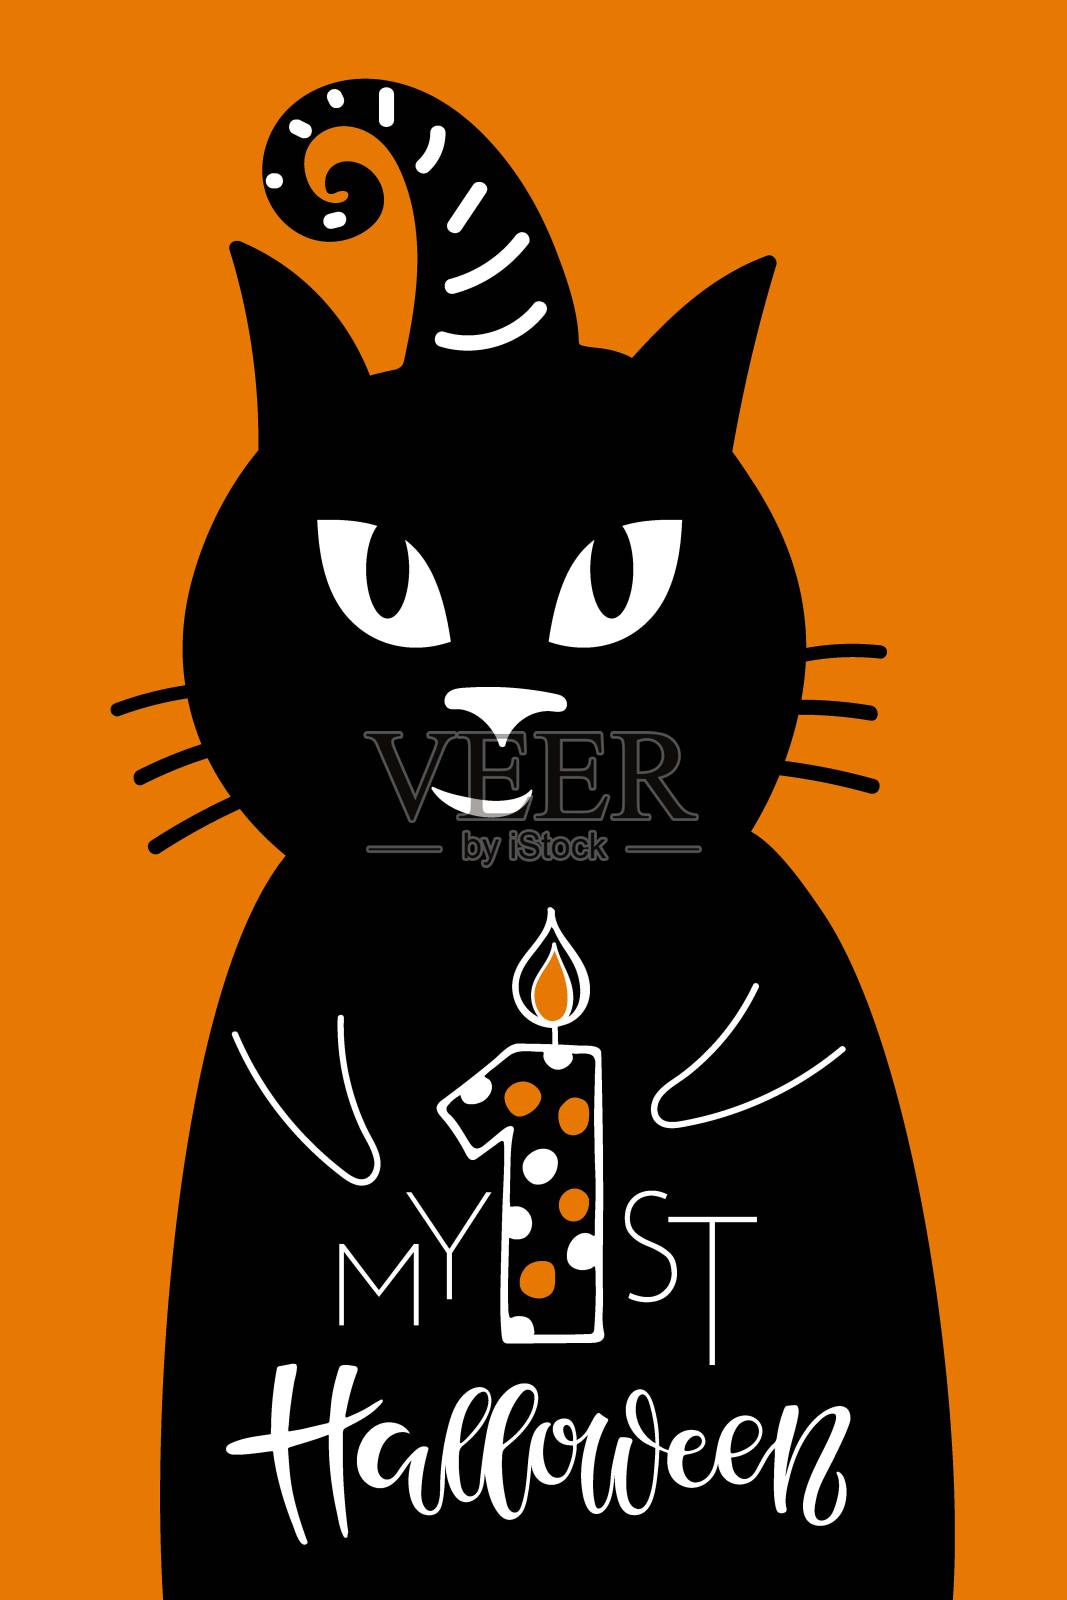 我的第一个橙色背景的万圣节字母标志。带女巫帽的黑猫和万圣节婴儿的庆祝语录。万圣节平面矢量插图节日家居装饰，邀请，礼物。设计模板素材